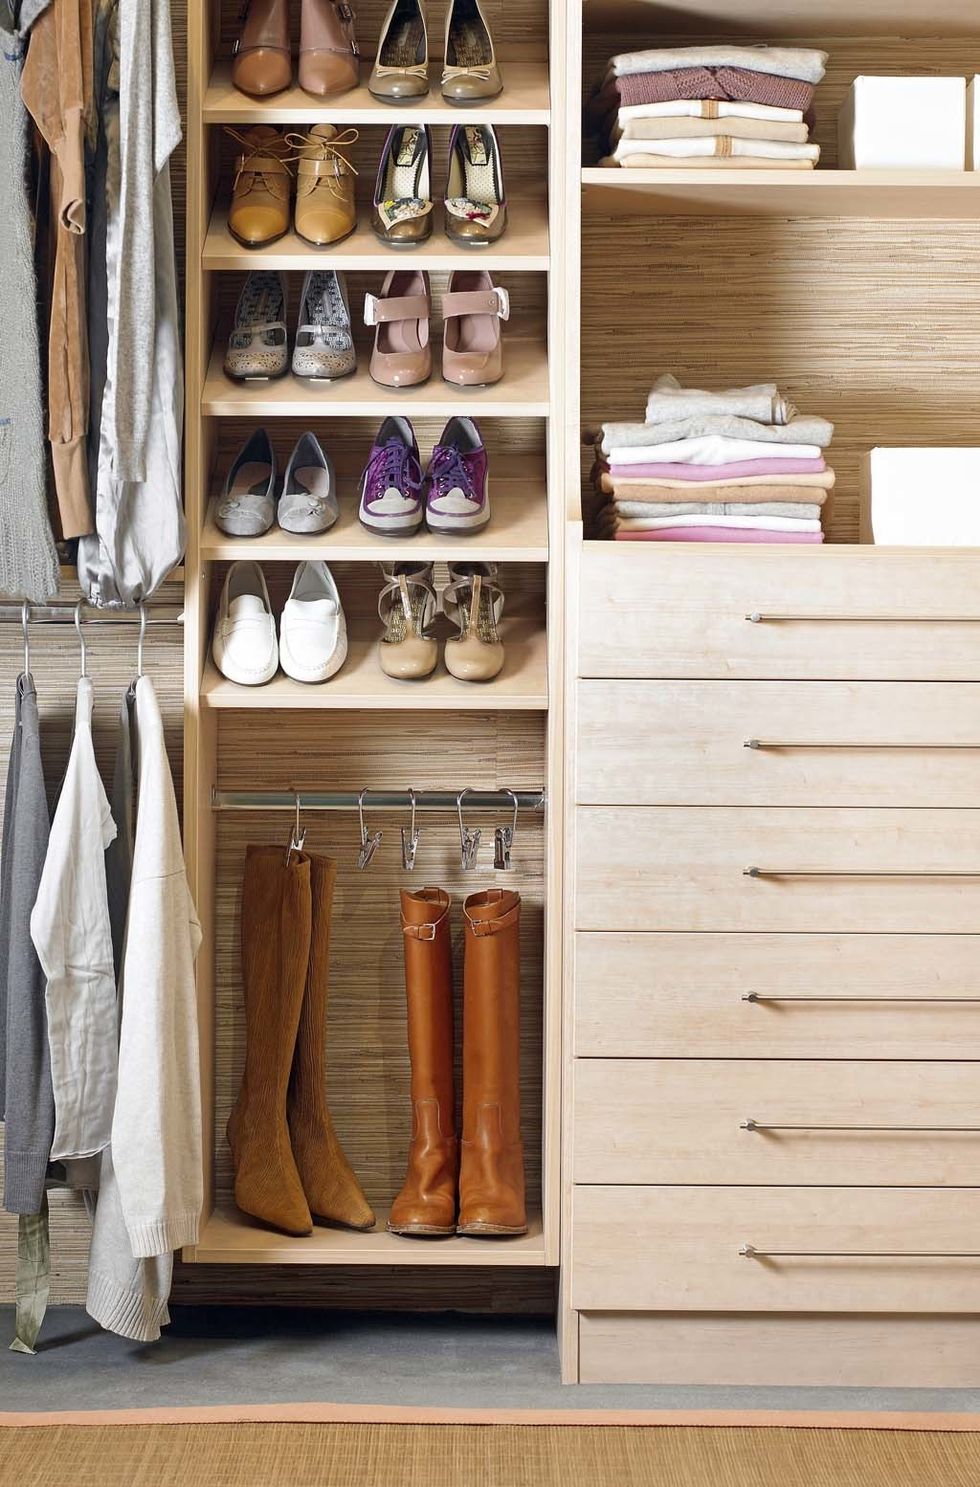 <p>Una idea perfecta para mantener tu calzado en perfecto estado. El sistema de almacenaje para botas puedes instalarla tu misma desde hoy en tu armario con una barra y unas perchas con gancho. ¡Genial!&nbsp;</p>